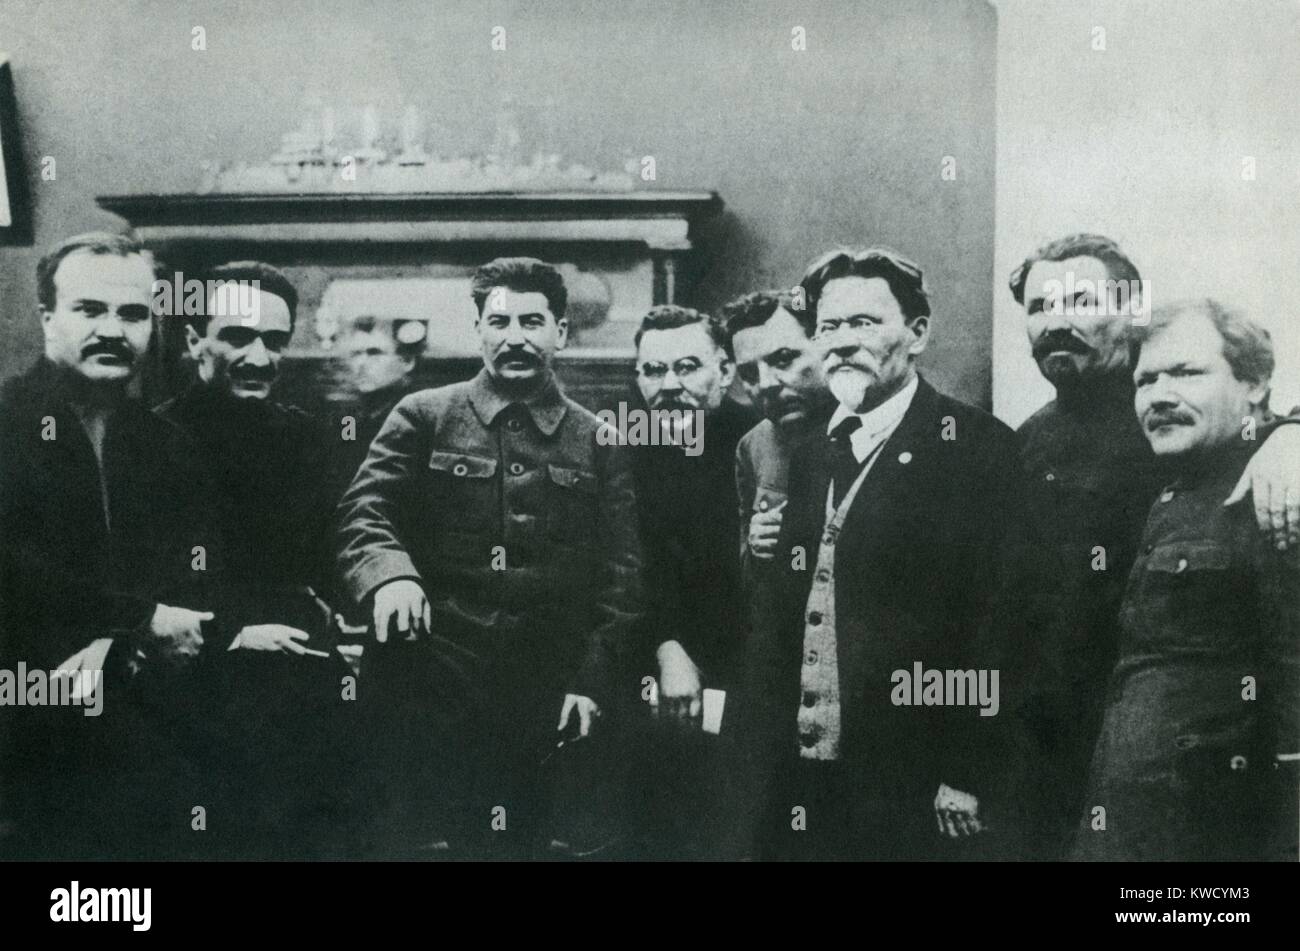 Stalin mit hohen sowjetischen Beamten, der im März 1929 fotografiert. L-R: Wjatscheslaw Molotow, Anastas Mikojan, Josef Stalin, Grigorij Petrowski, Kliment Woroschilow, Michail Kalinin, Alexander Smirnow, Tolokonzev. Petrowski und Smirnow wurden während der 1930er Jahre stalinistischen Säuberungen (BSLOC 2017 2 31 ausgeführt) Stockfoto